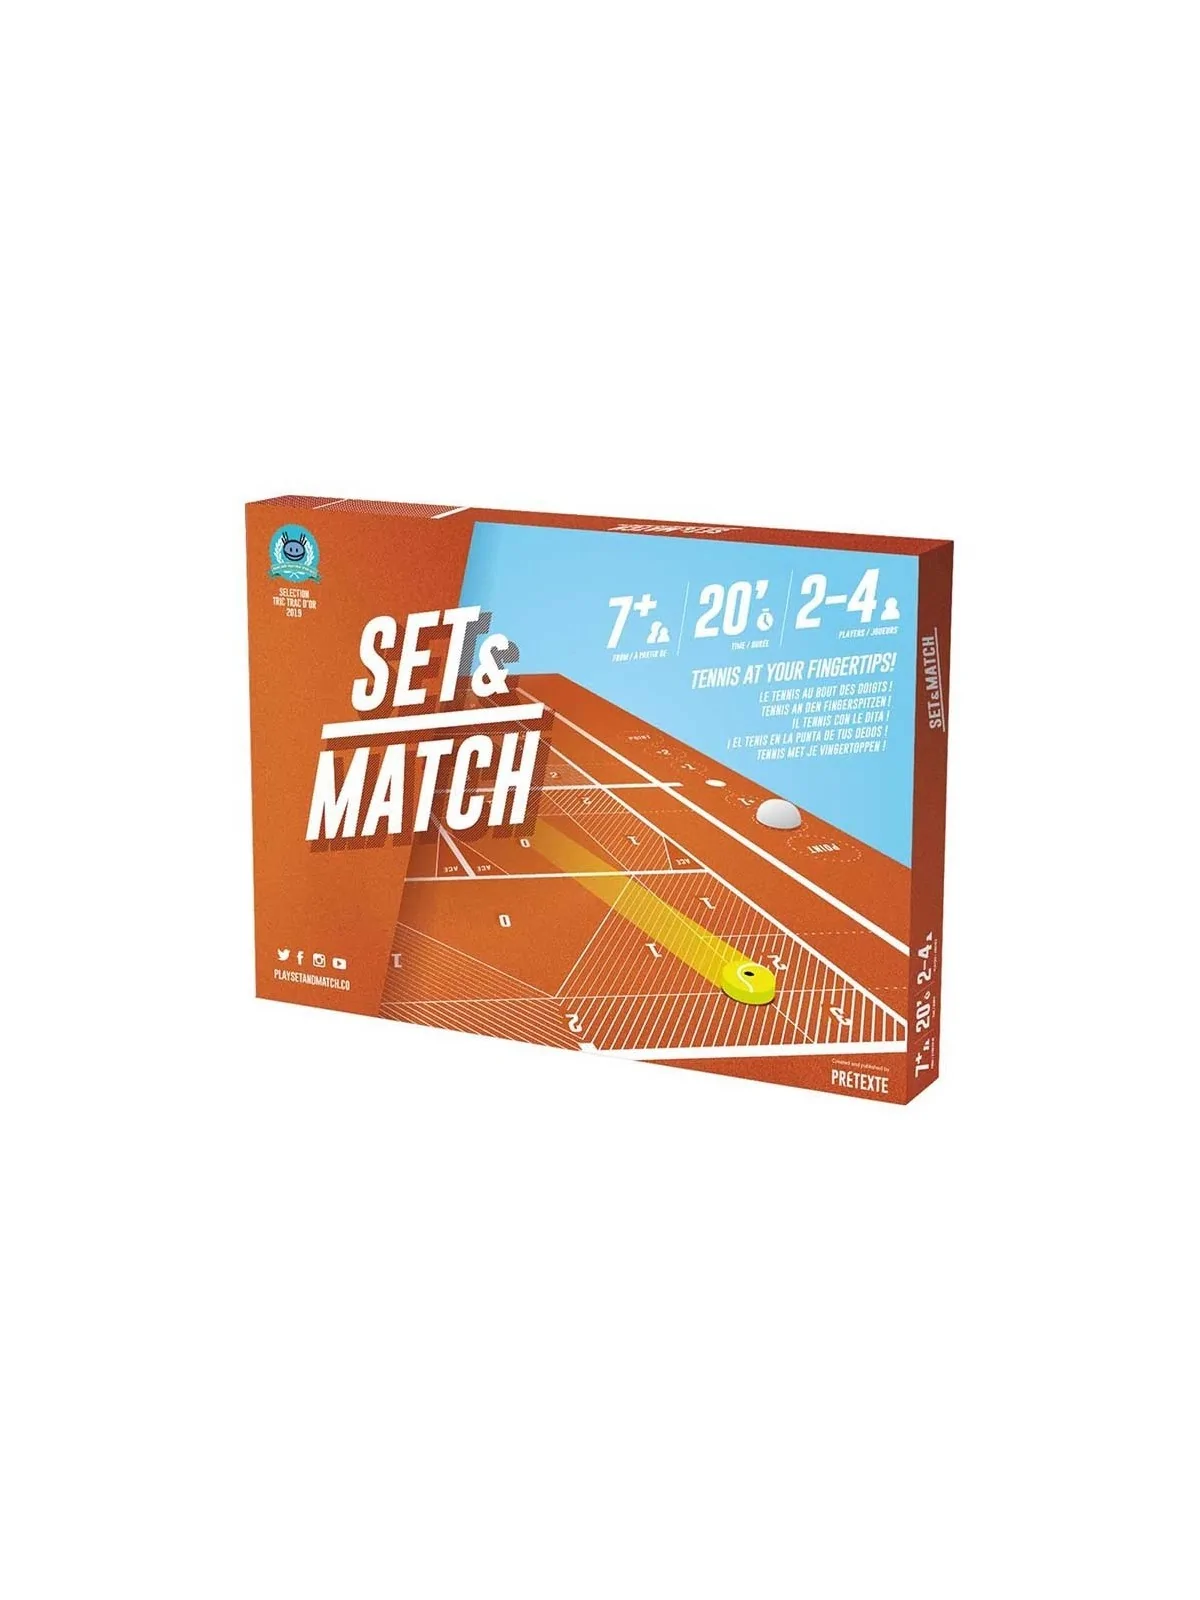 Comprar Set & Match barato al mejor precio 19,79 € de Asmodee